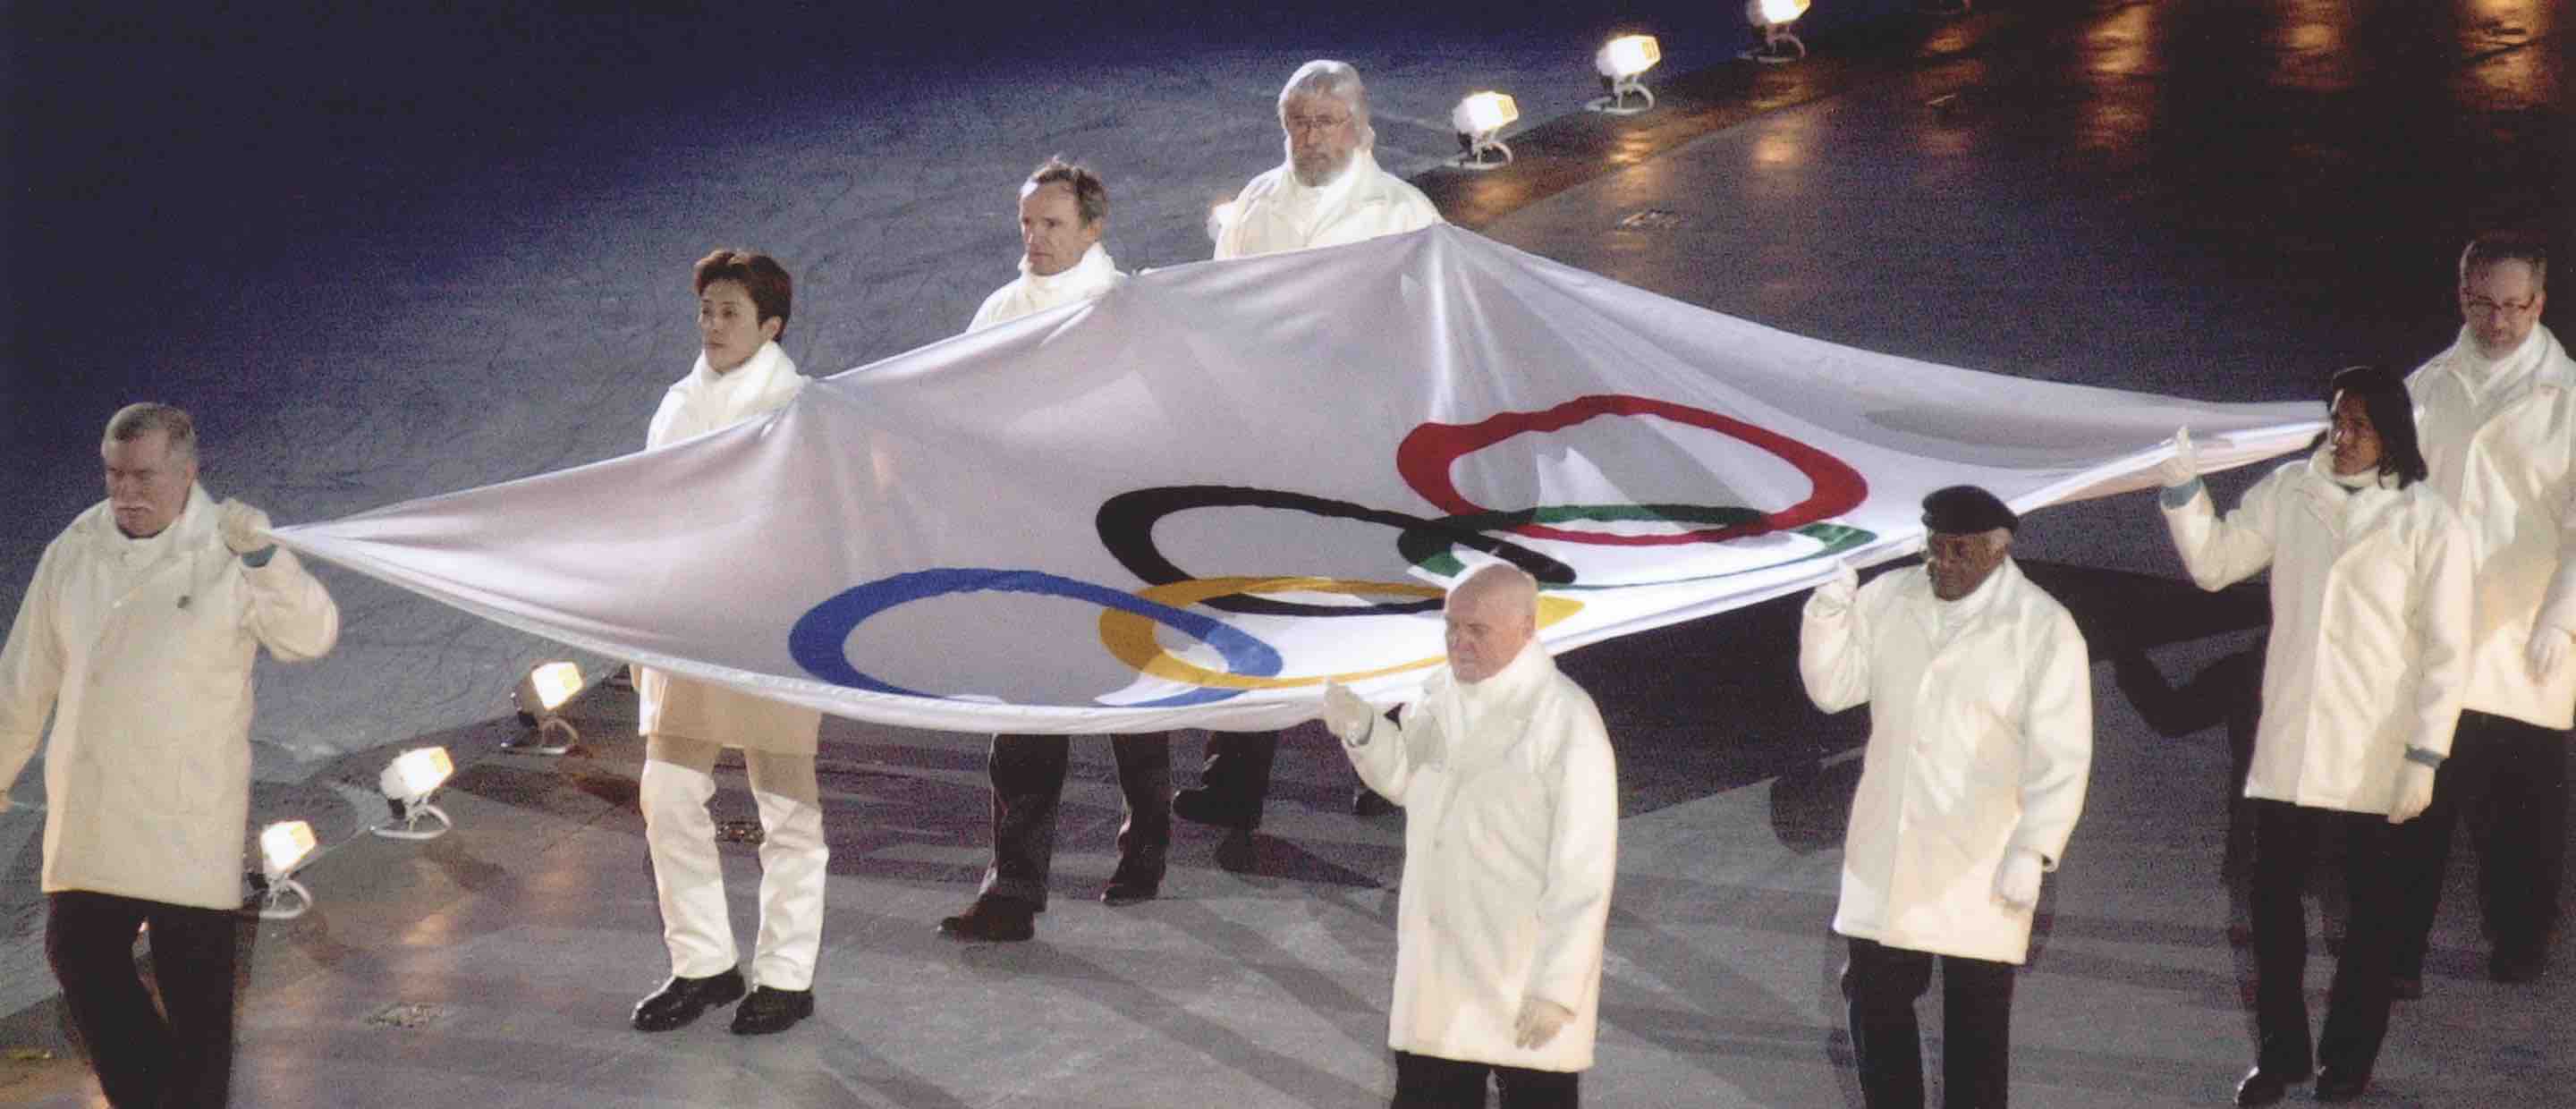 JMC 2002 Olympic Ceremony